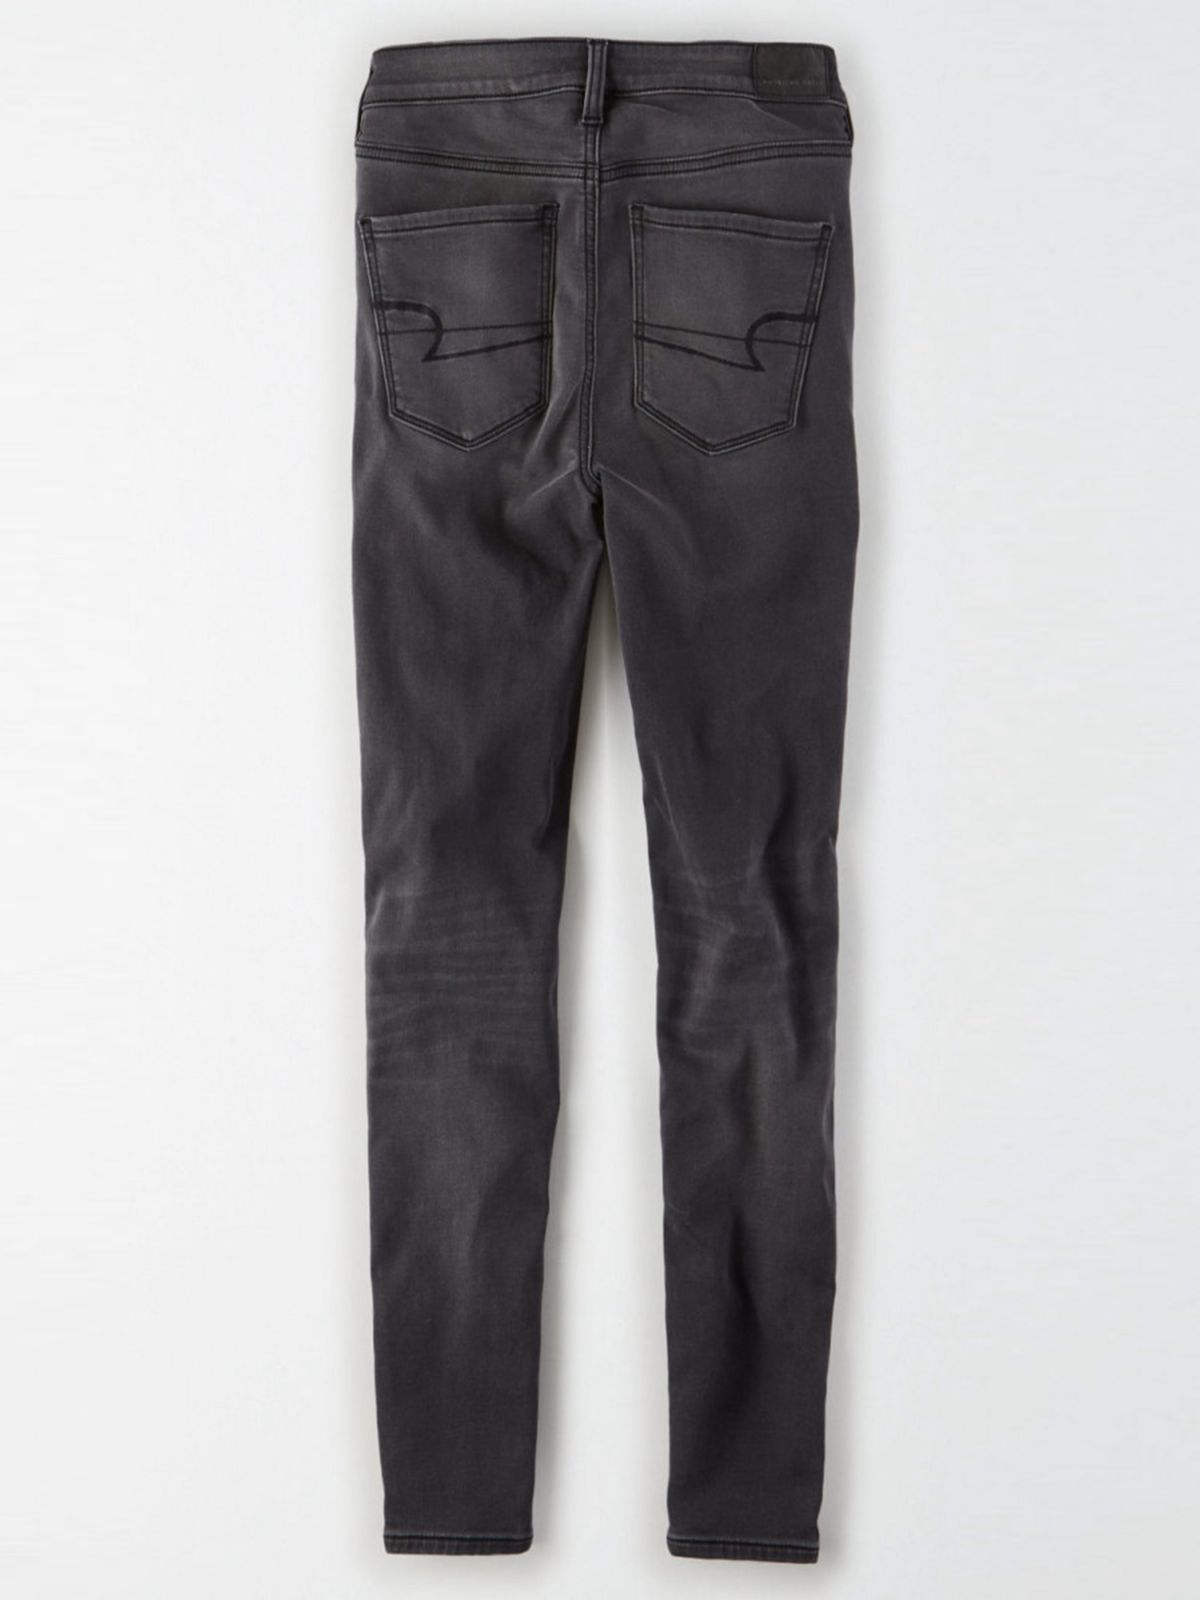  ג'ינס סקיני ארוך בגזרת Jegging של AMERICAN EAGLE